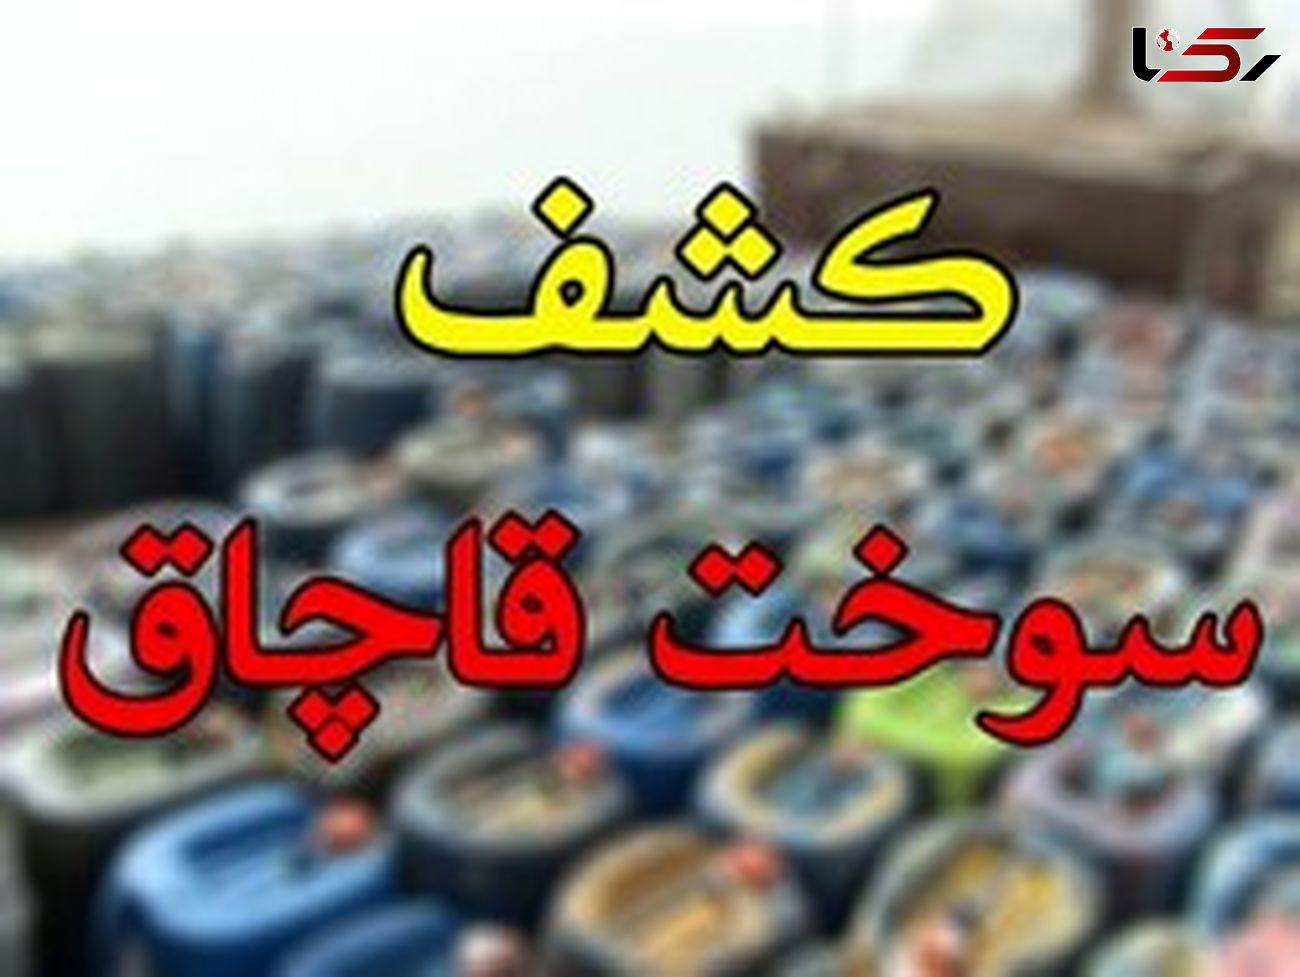 توقیف خودروی حامل سوخت قاچاق در خرم آباد 